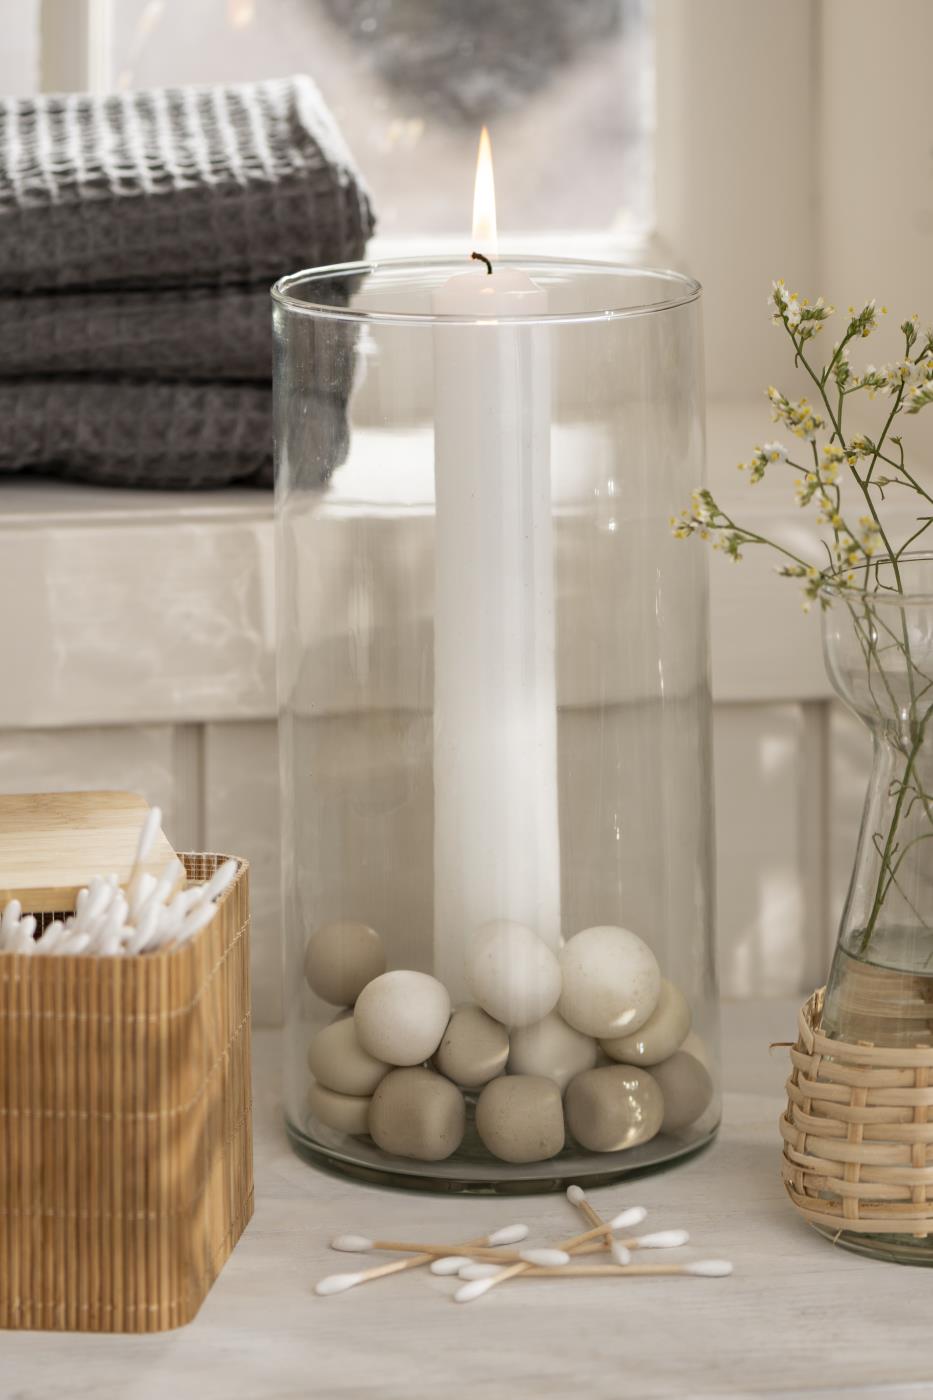 Kerzenhalter Windlicht Glas für Kerzen 3,8cm